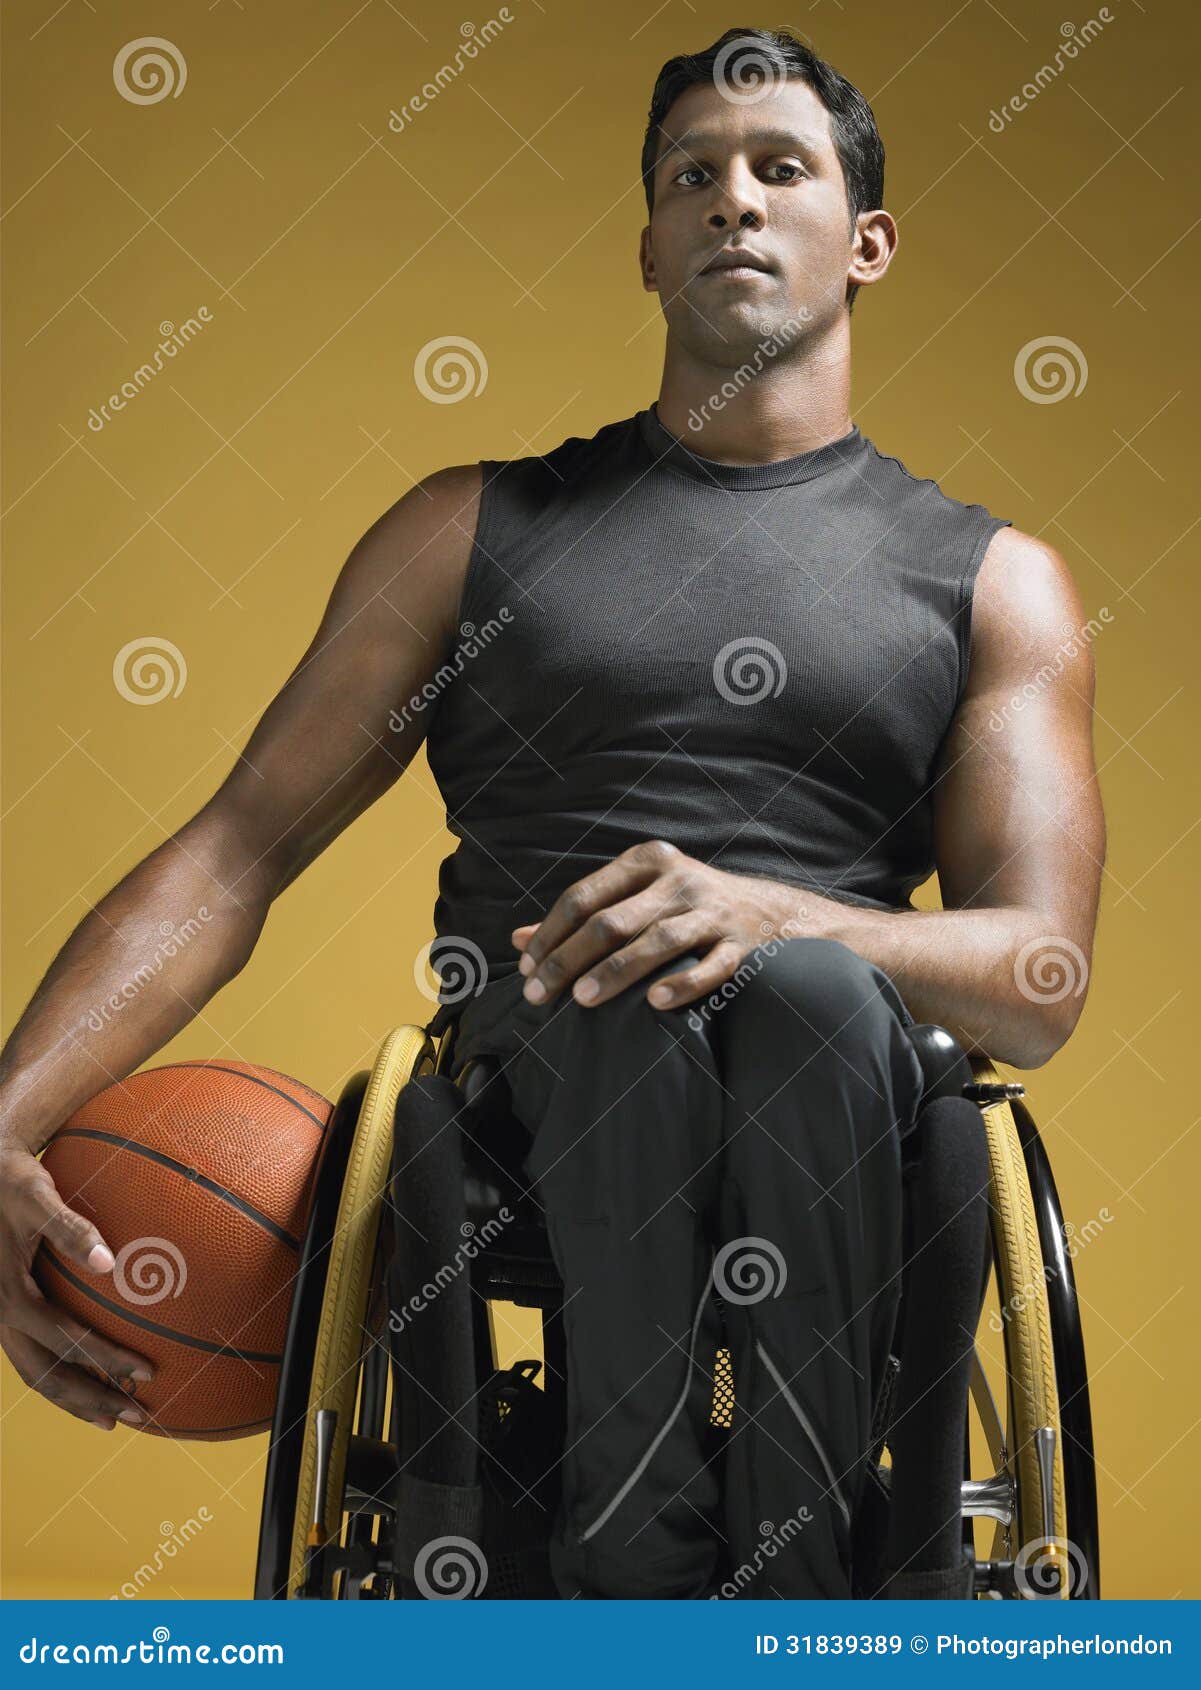 paraplegic athlete with basketball in wheelchair